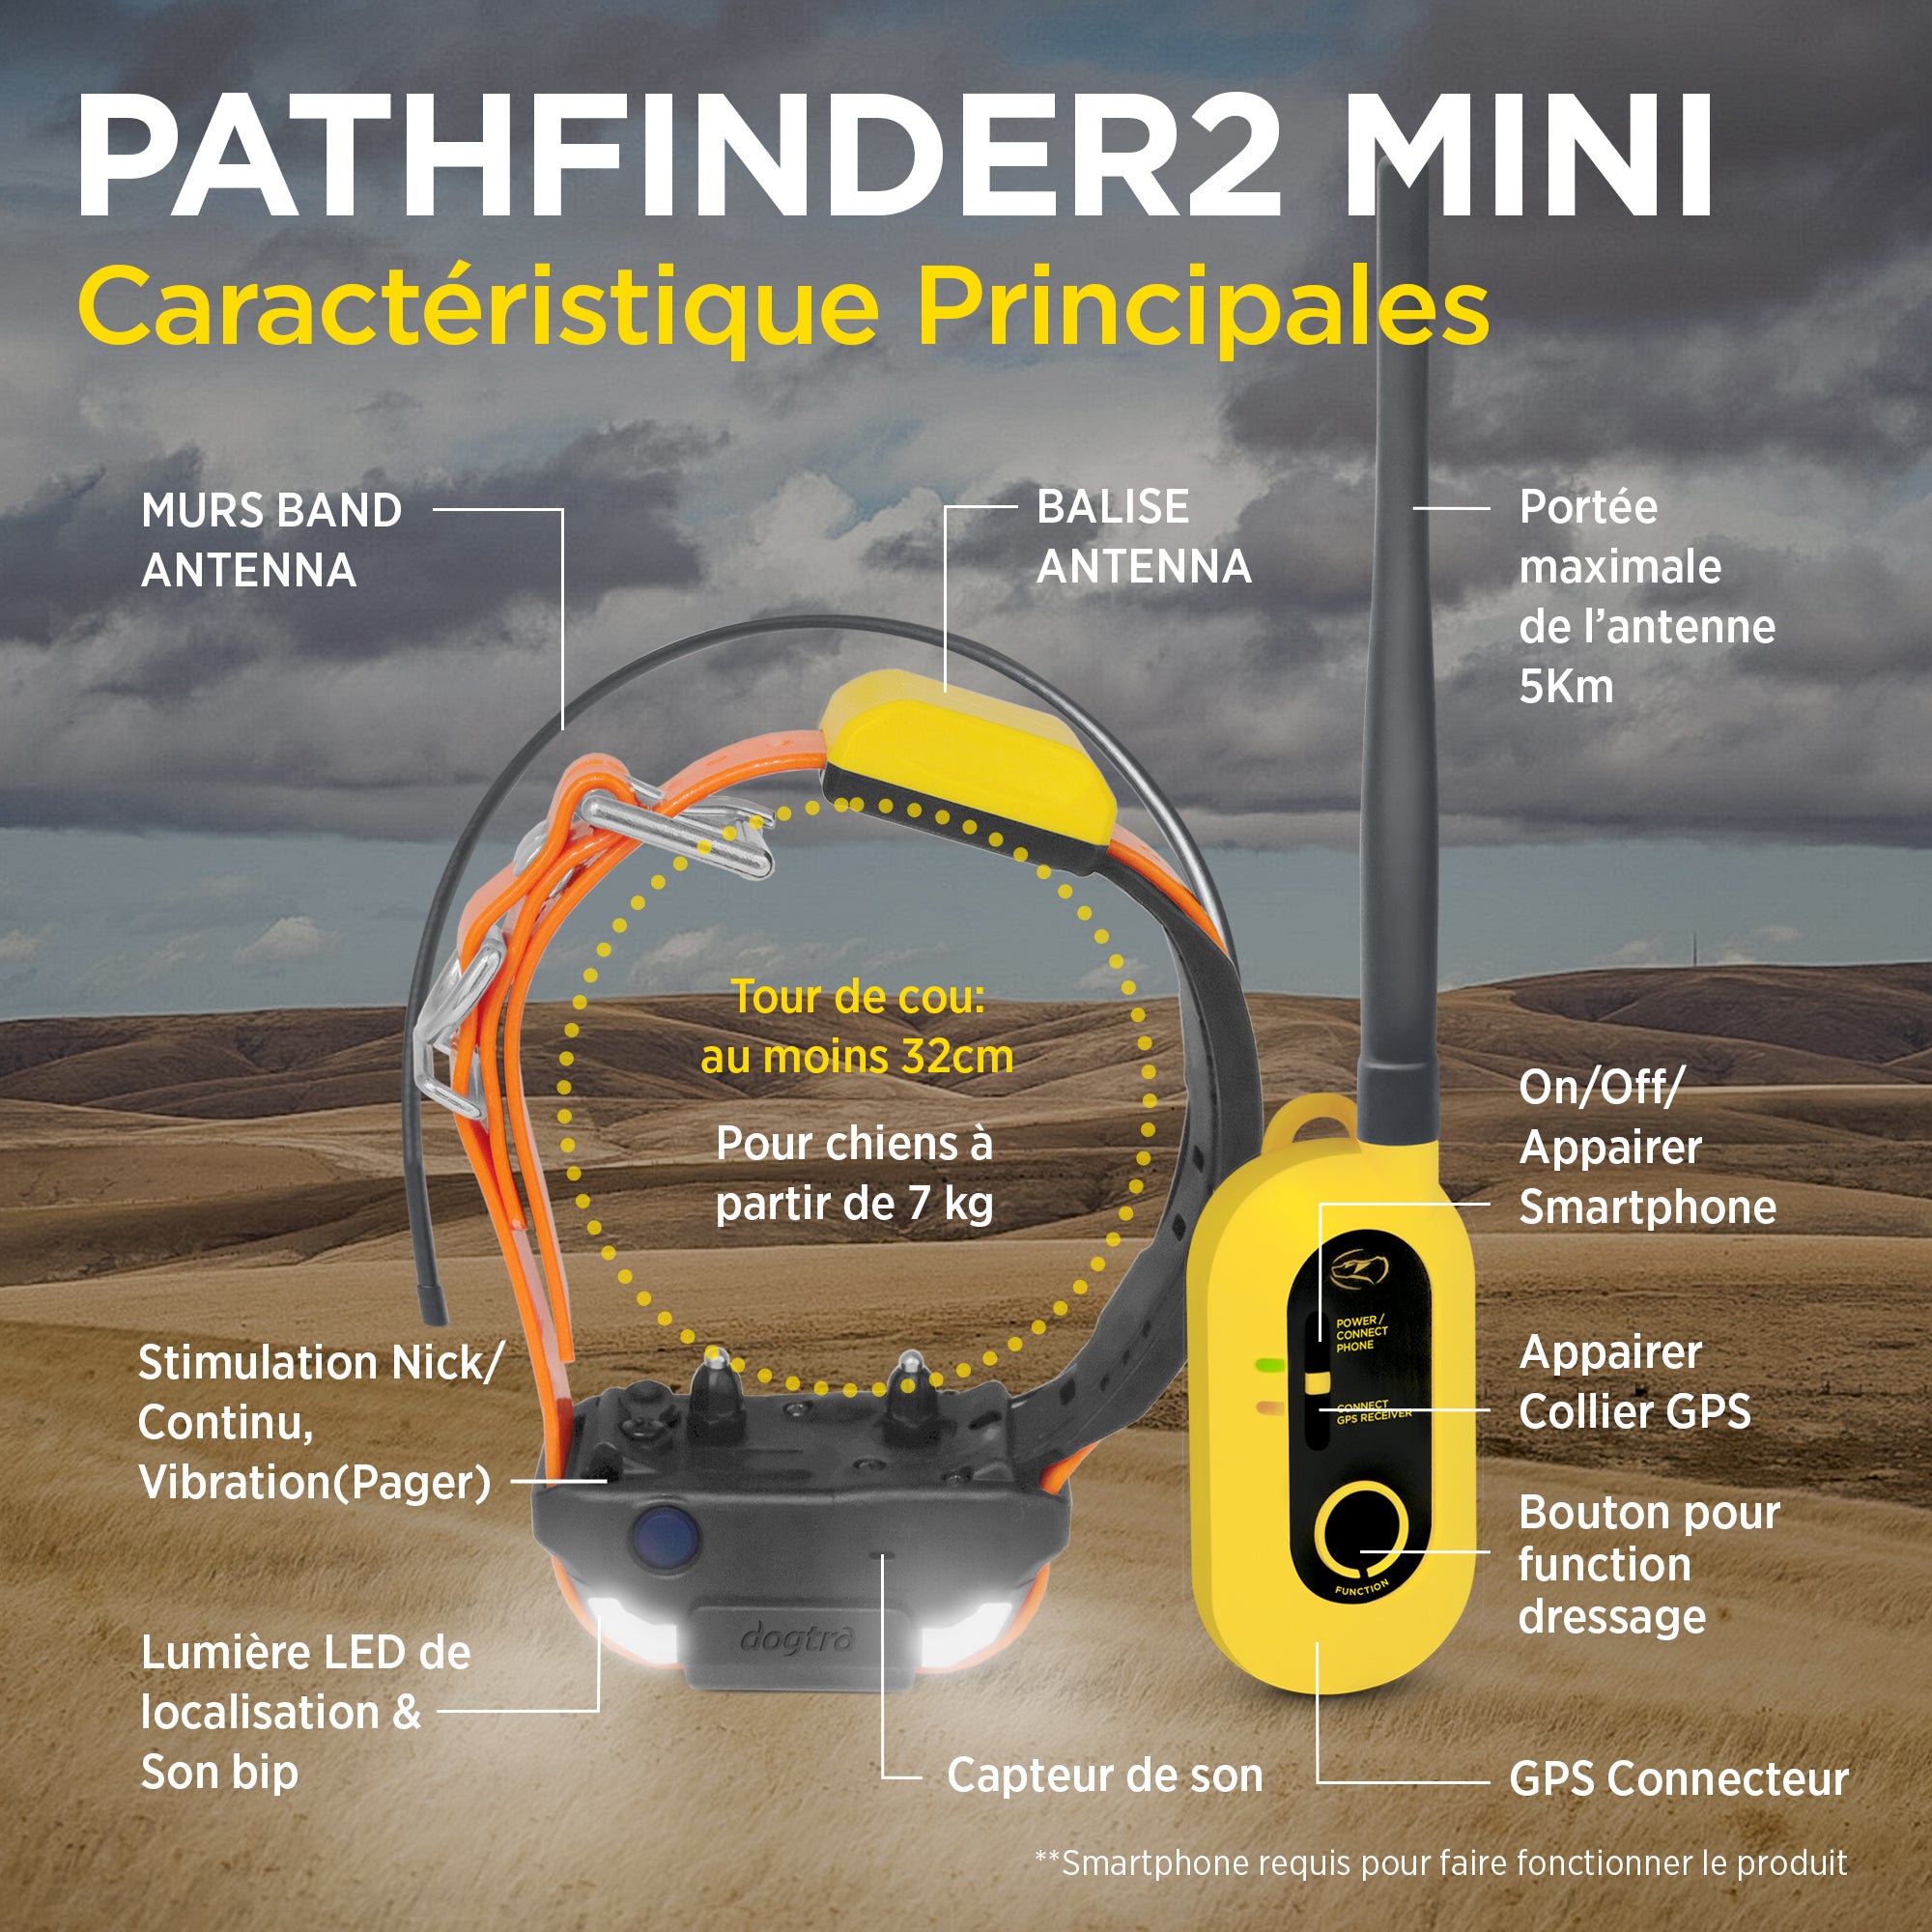 Pathfinder 2 MINI